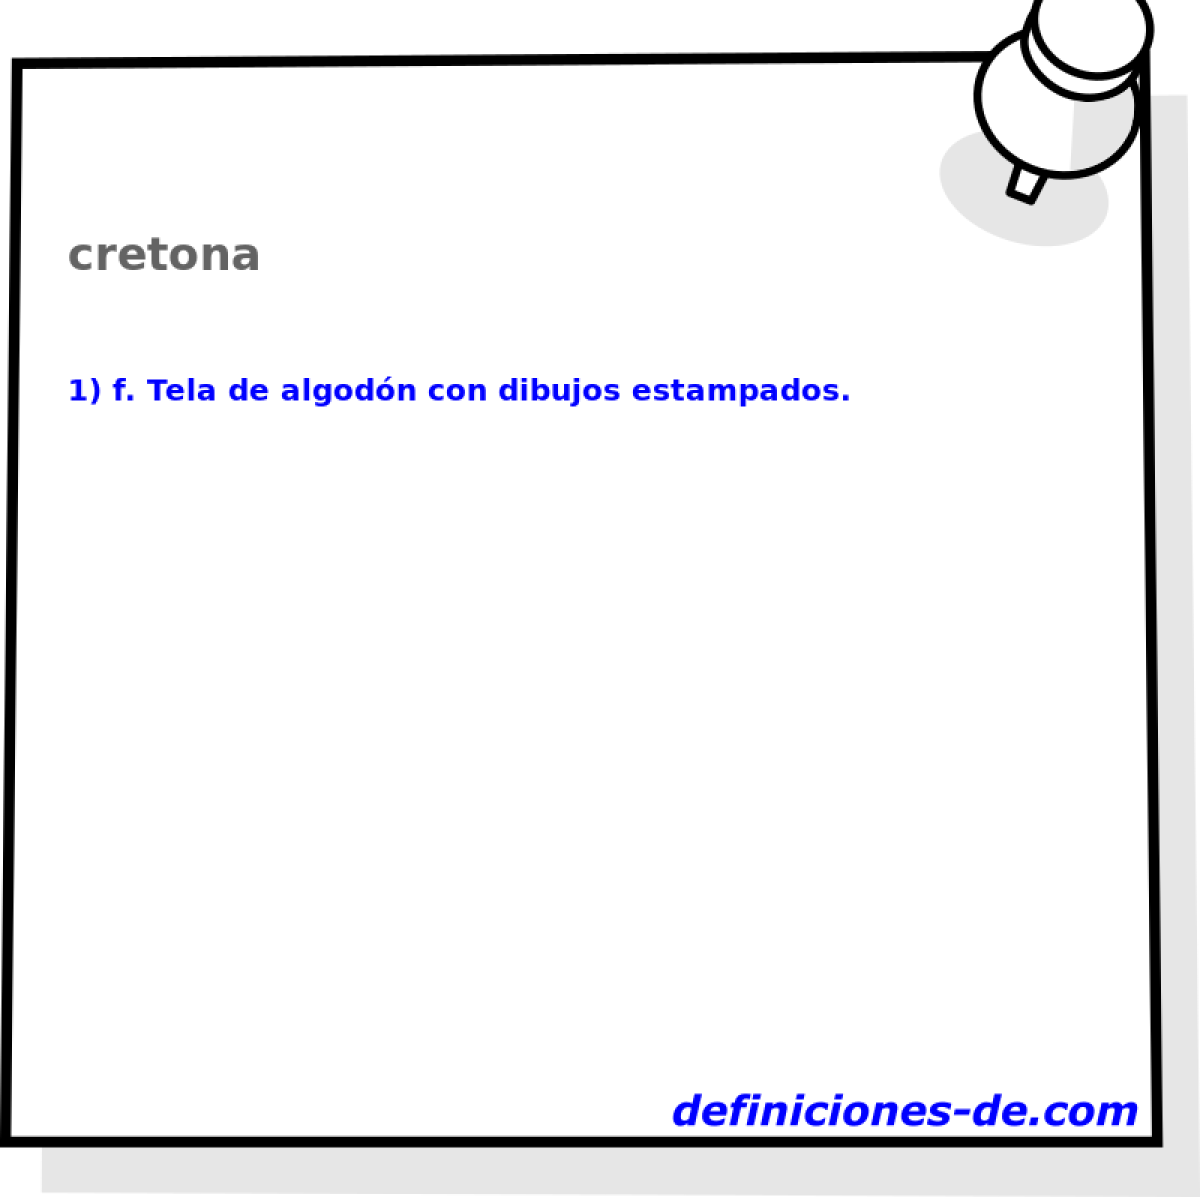 cretona 